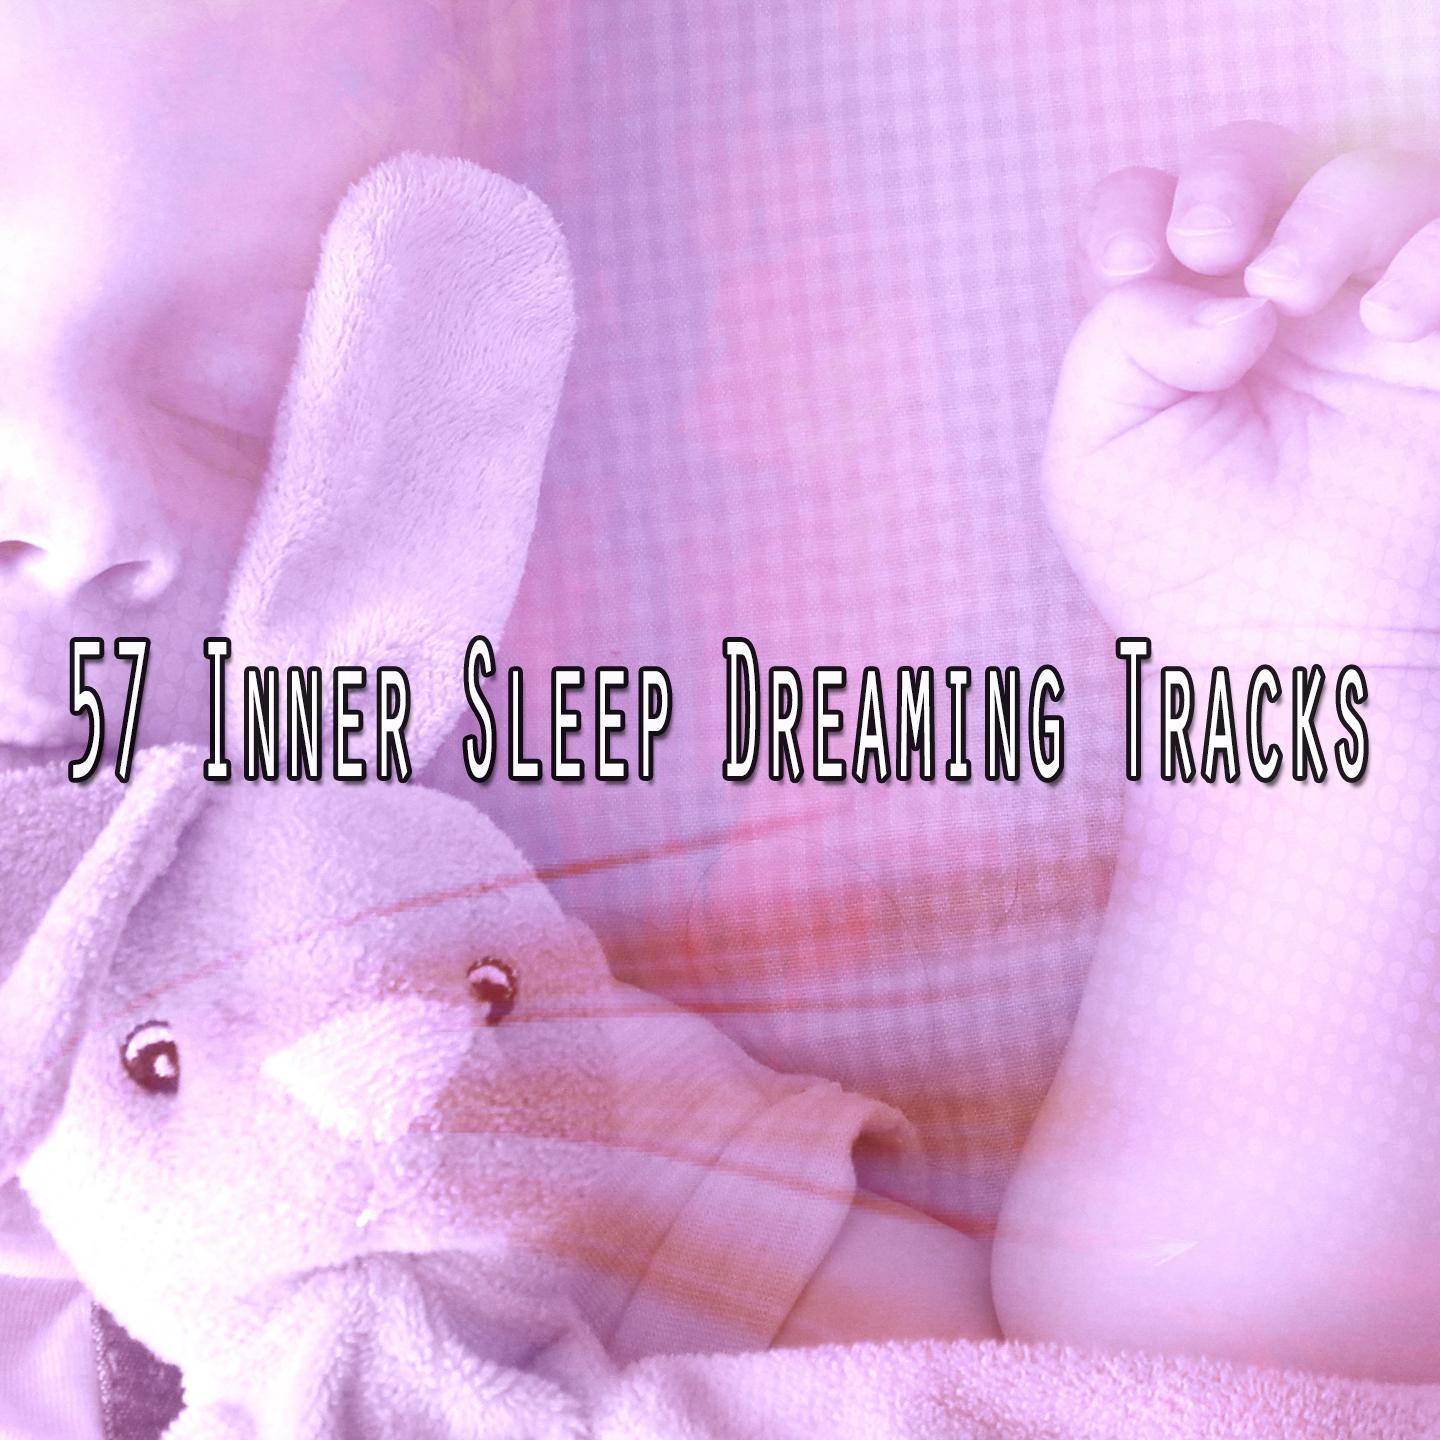 57 Inner Sleep Dreaming Tracks